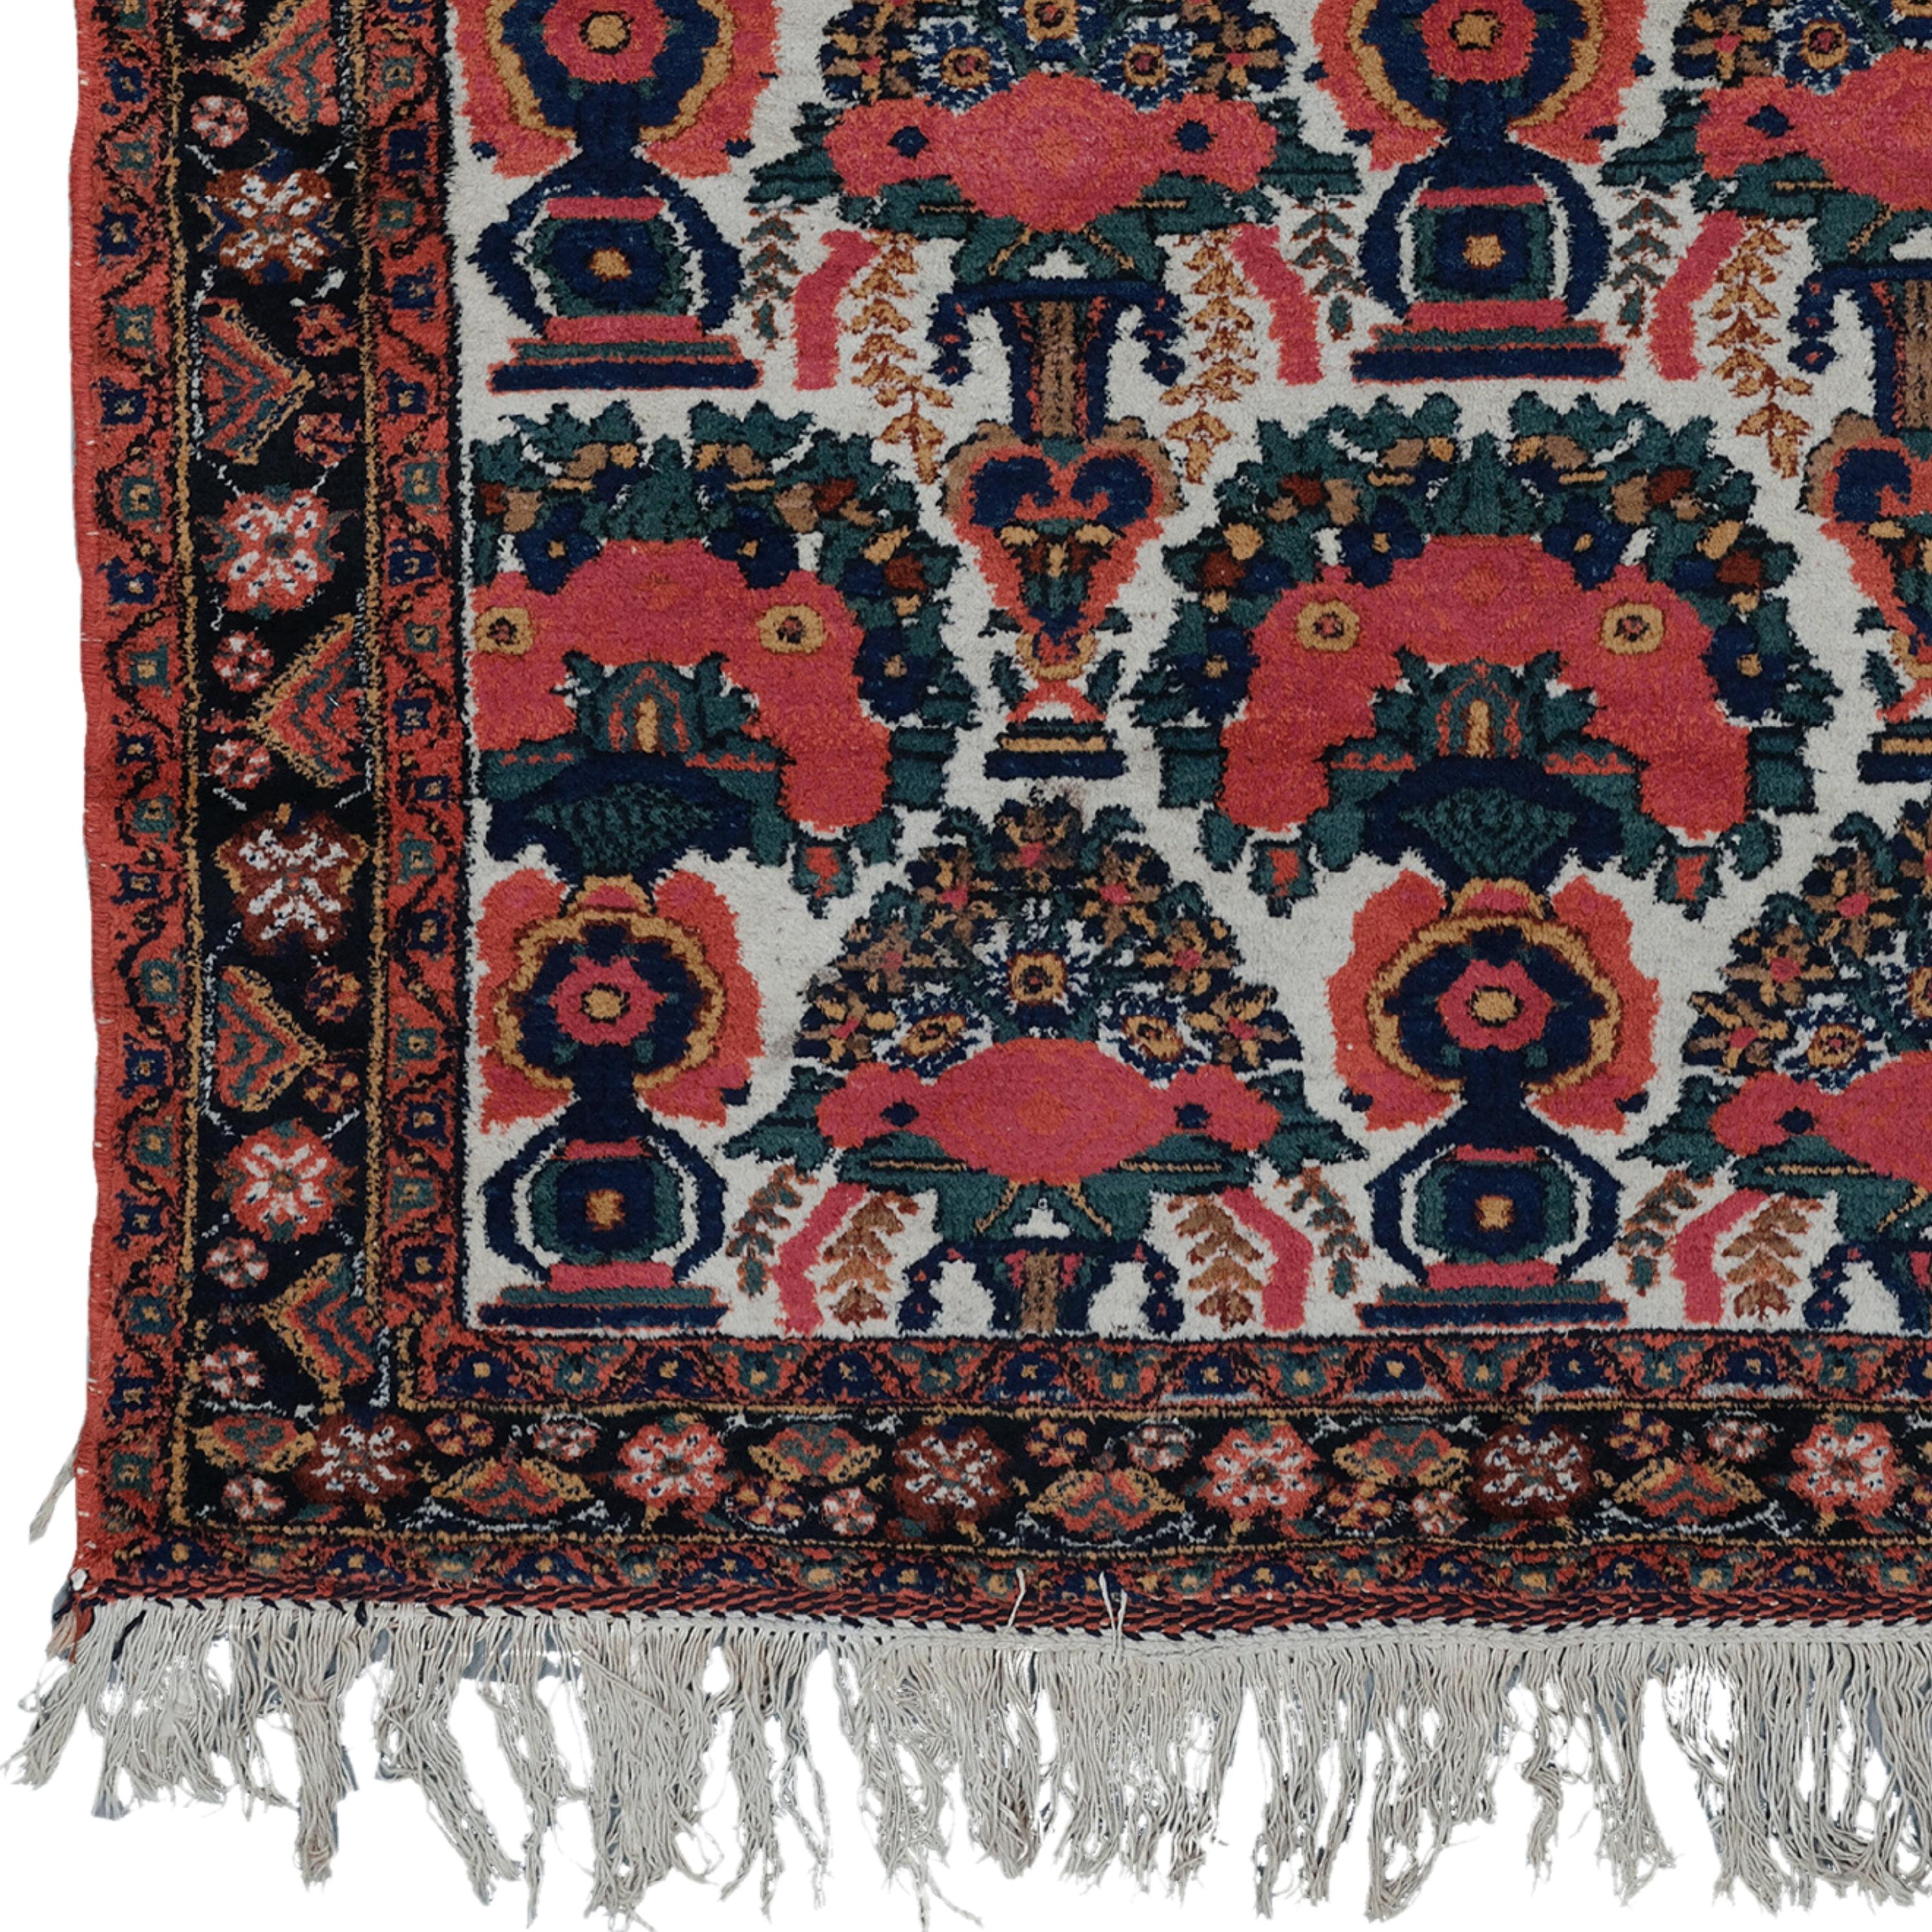 Ce tapis Afshar du XIXe siècle est un exemple de l'artisanat le plus raffiné de l'époque. Il ajoute de la noblesse à tout espace grâce à sa riche histoire et à son design sophistiqué. Des motifs rouges et dorés éclatants brodés sur un fond bleu